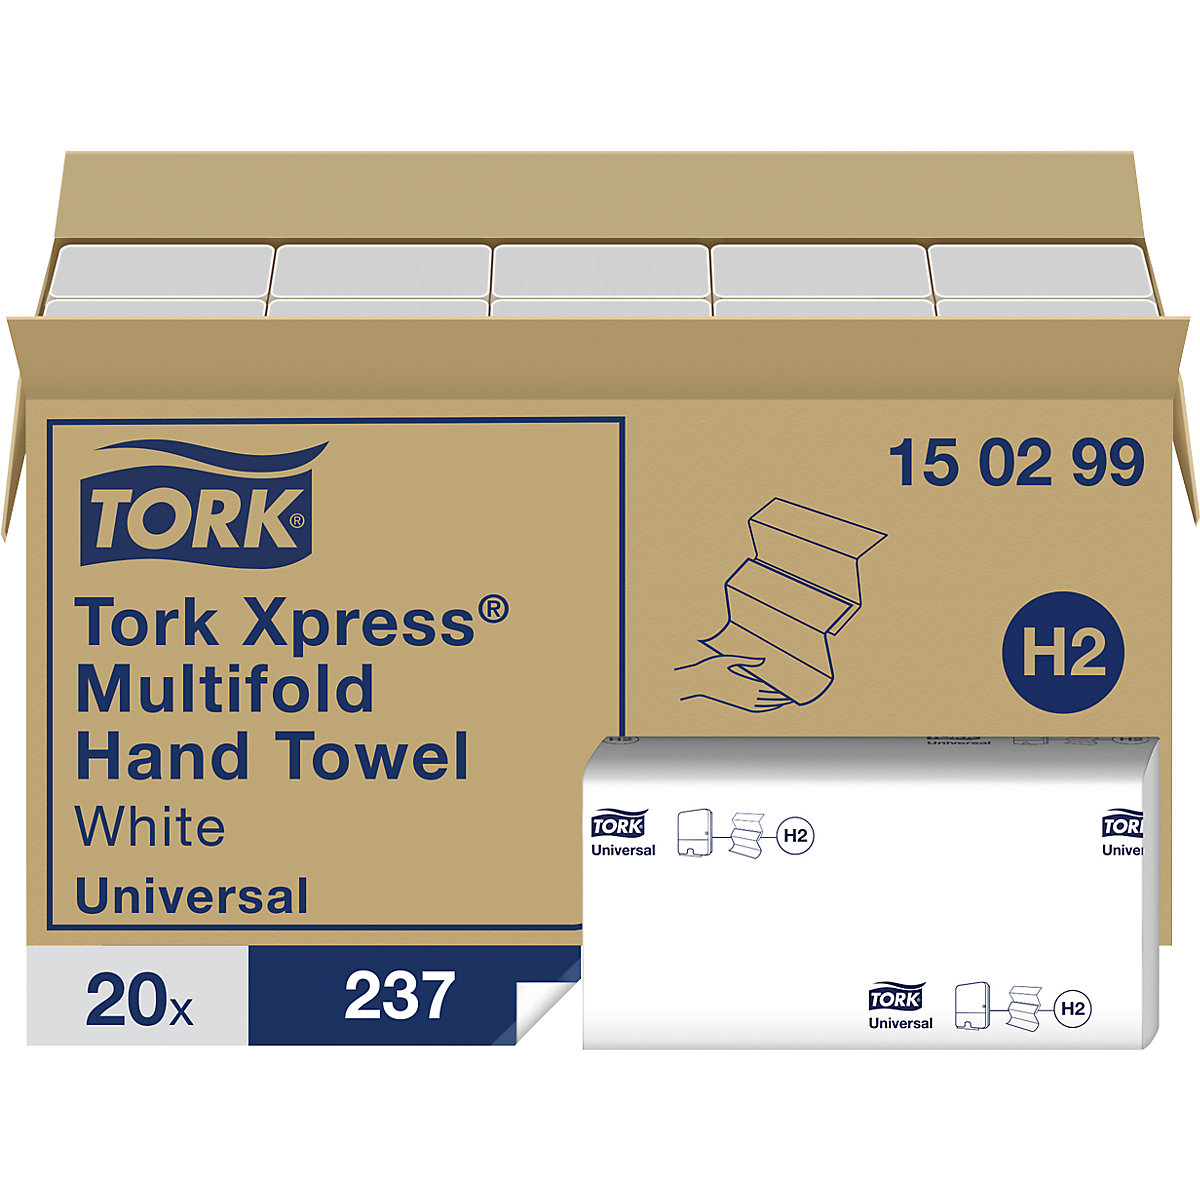 Tork Xpress® folded hand towels